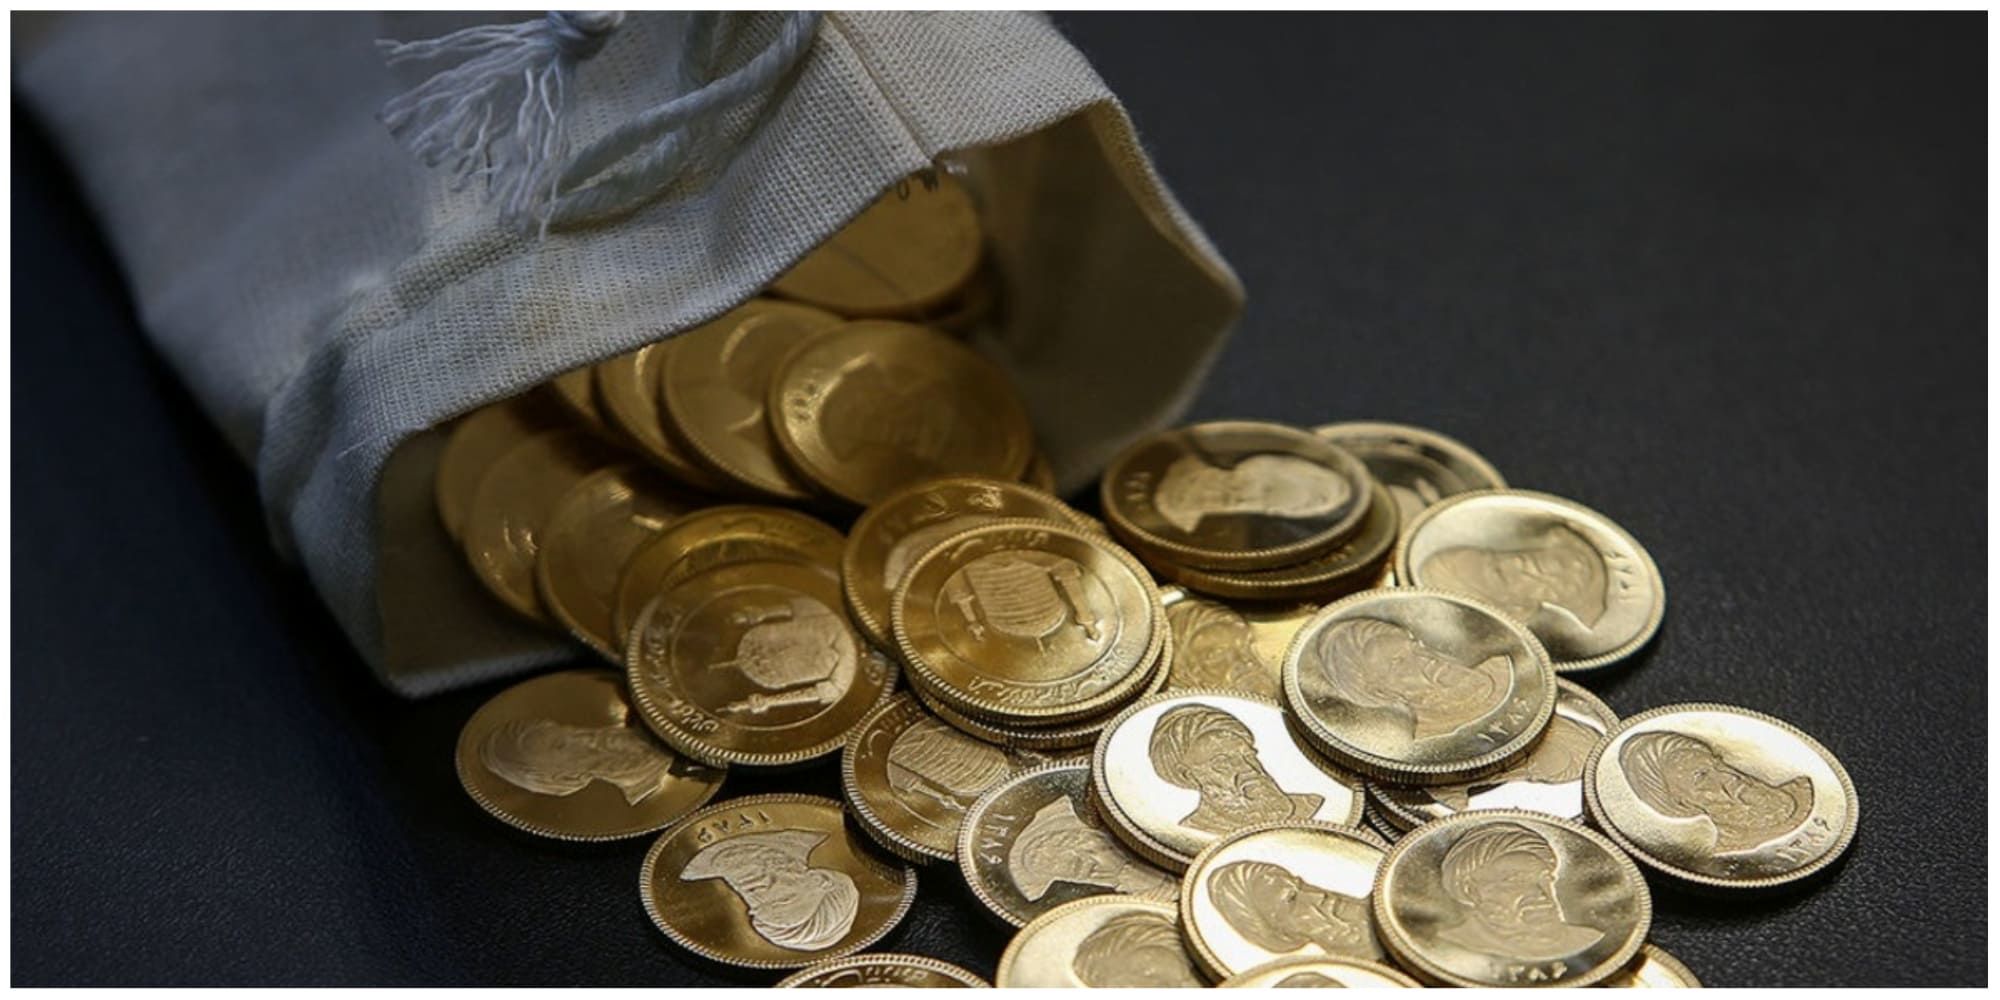 سکه های جدید وارد بازار می شود؟ /پیش بینی قیمت سکه امروز